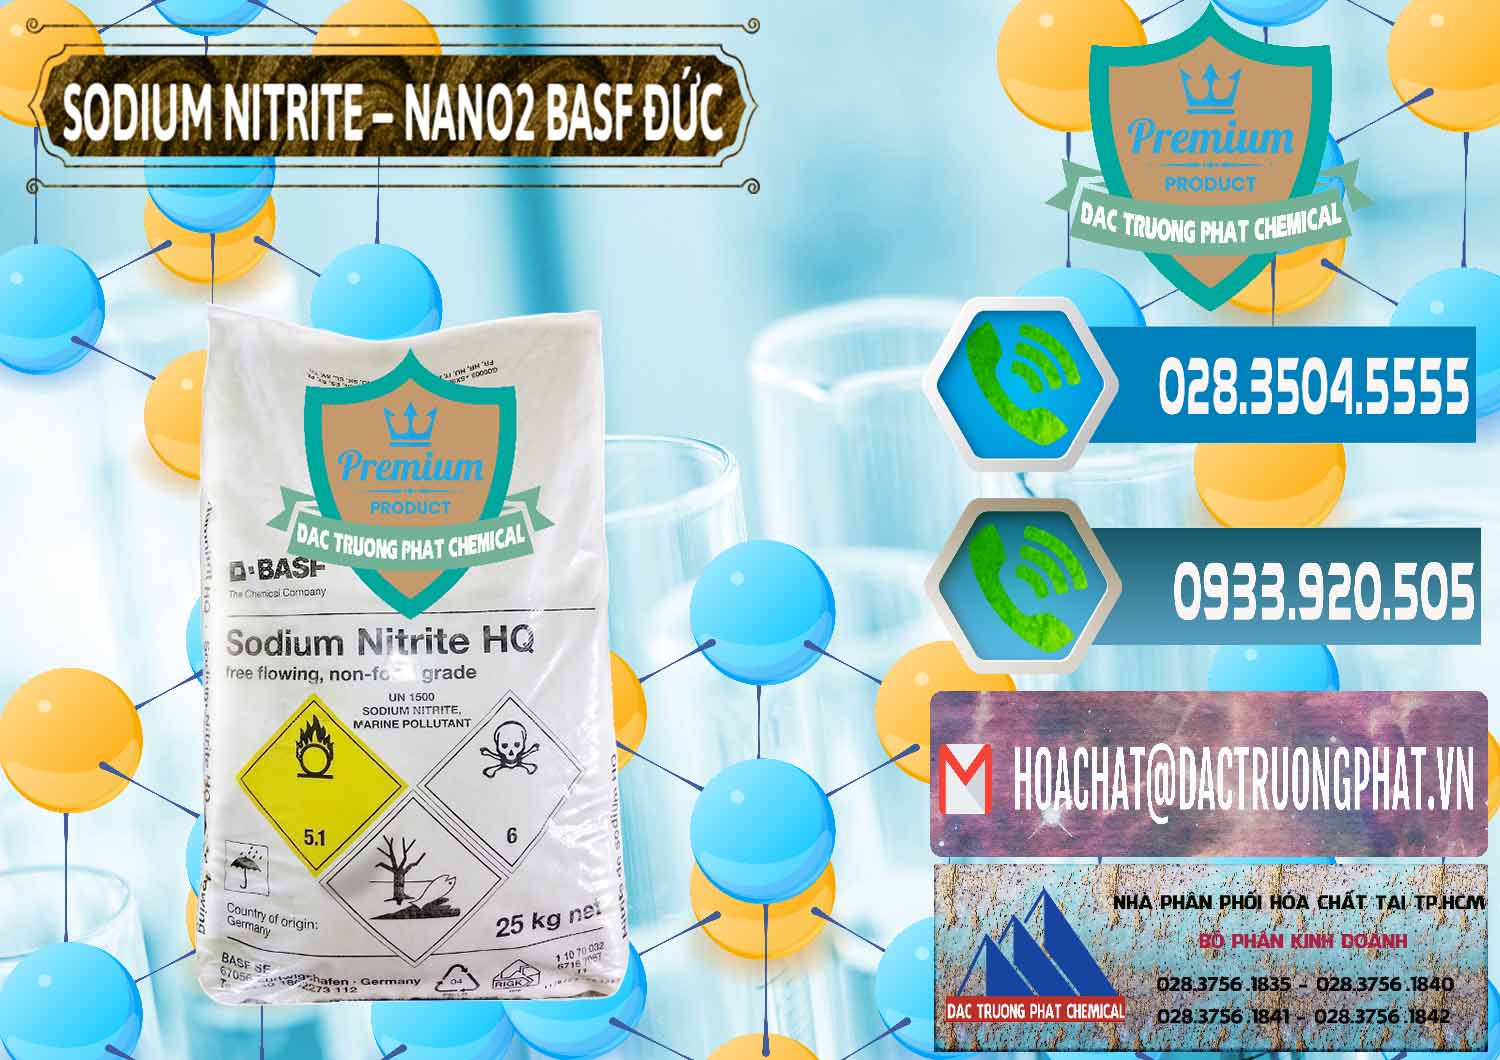 Cty chuyên kinh doanh và bán Sodium Nitrite - NANO2 Đức BASF Germany - 0148 - Nơi nhập khẩu & cung cấp hóa chất tại TP.HCM - congtyhoachat.net